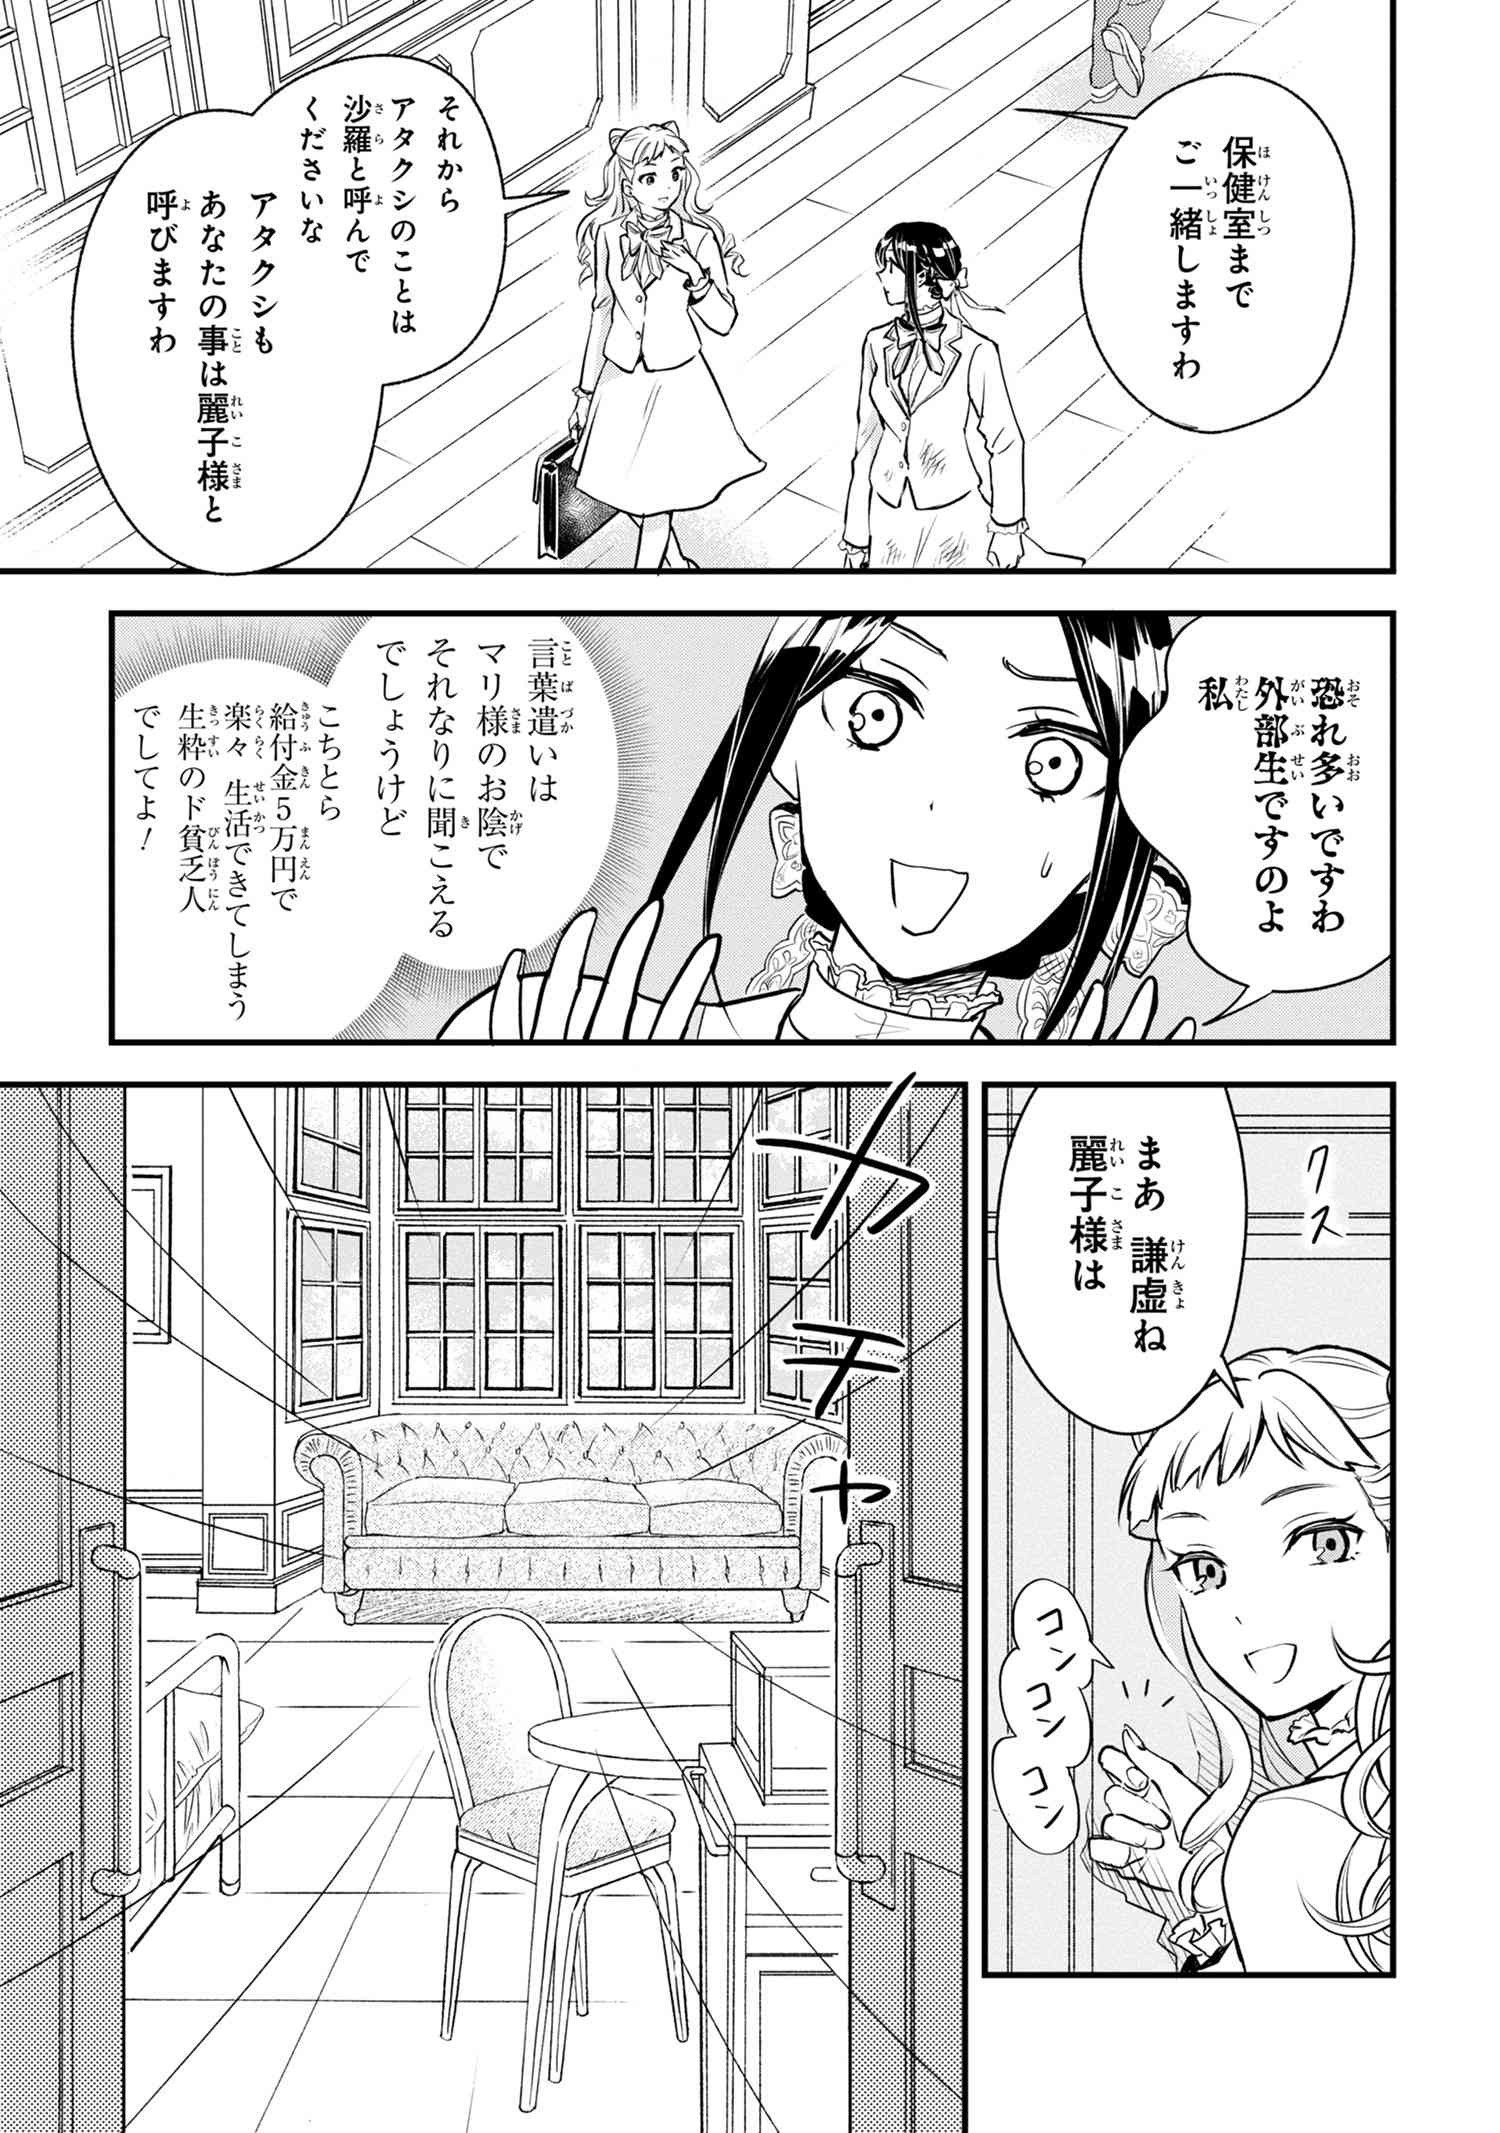 Reiko no Fuugi Akuyaku Reijou to Yobarete imasu ga, tada no Binbou Musume desu - Chapter 1-2 - Page 3